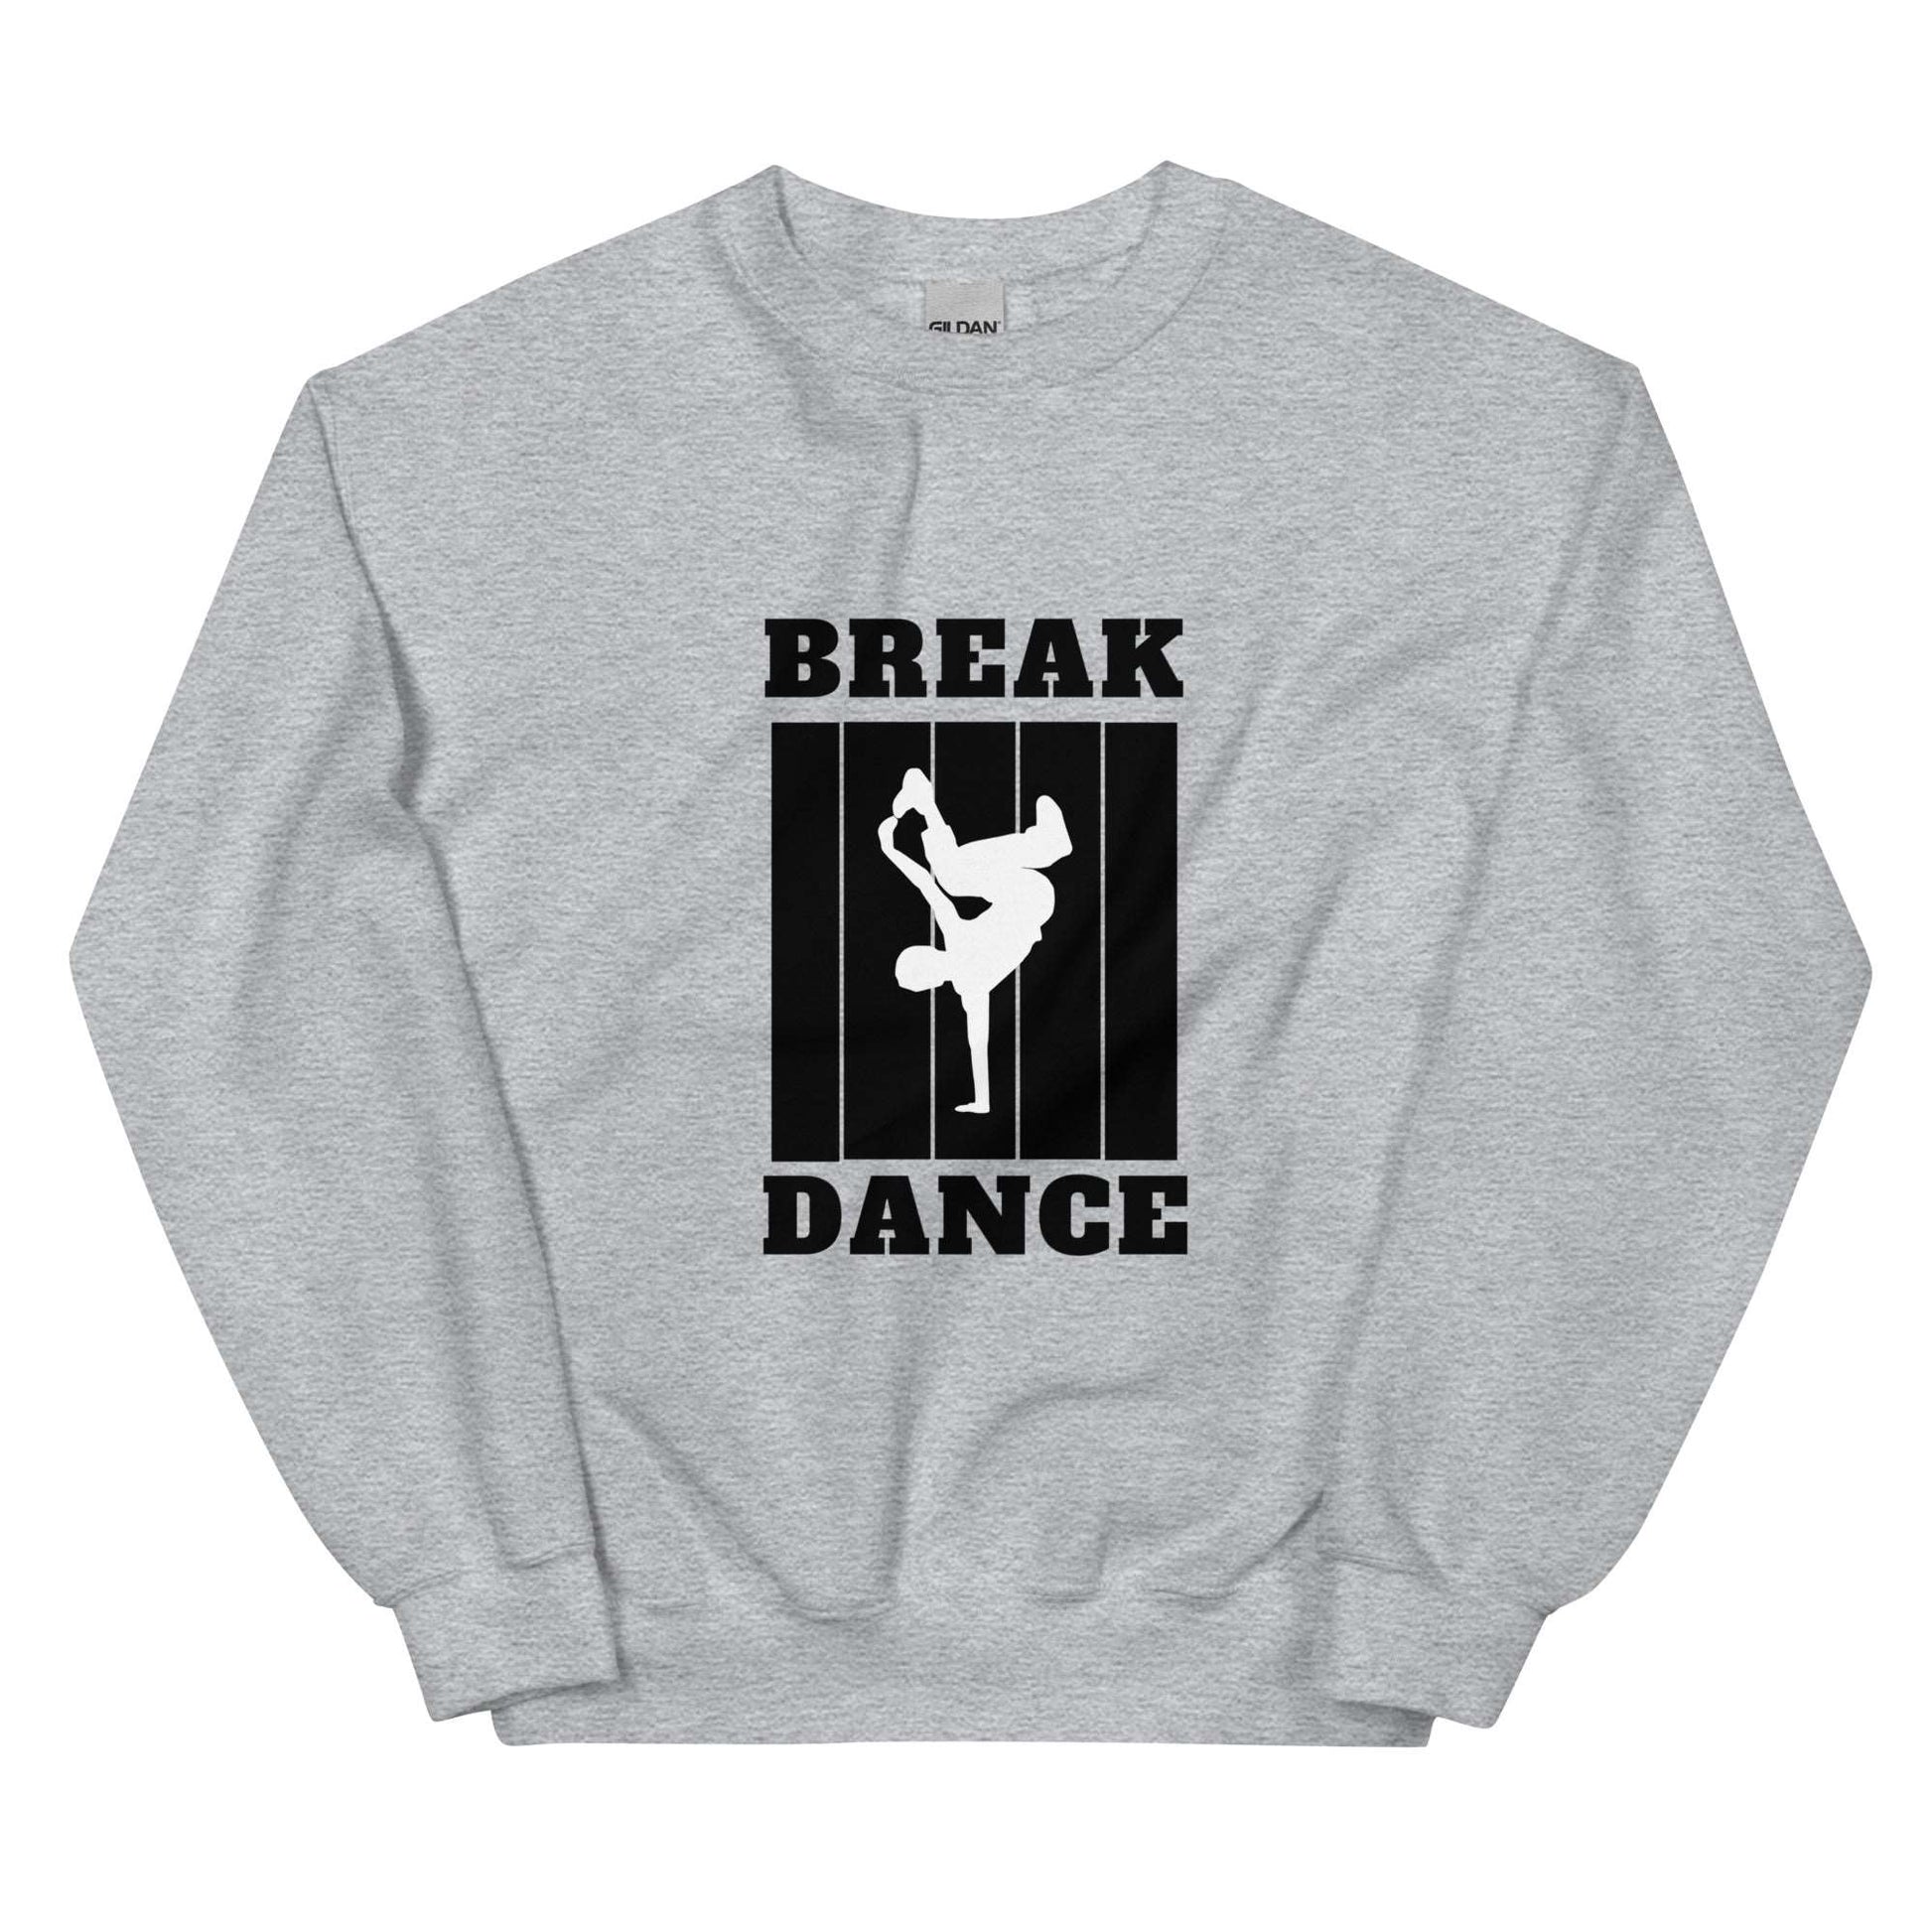 BREAK DANCE - Unisex Sweatshirt